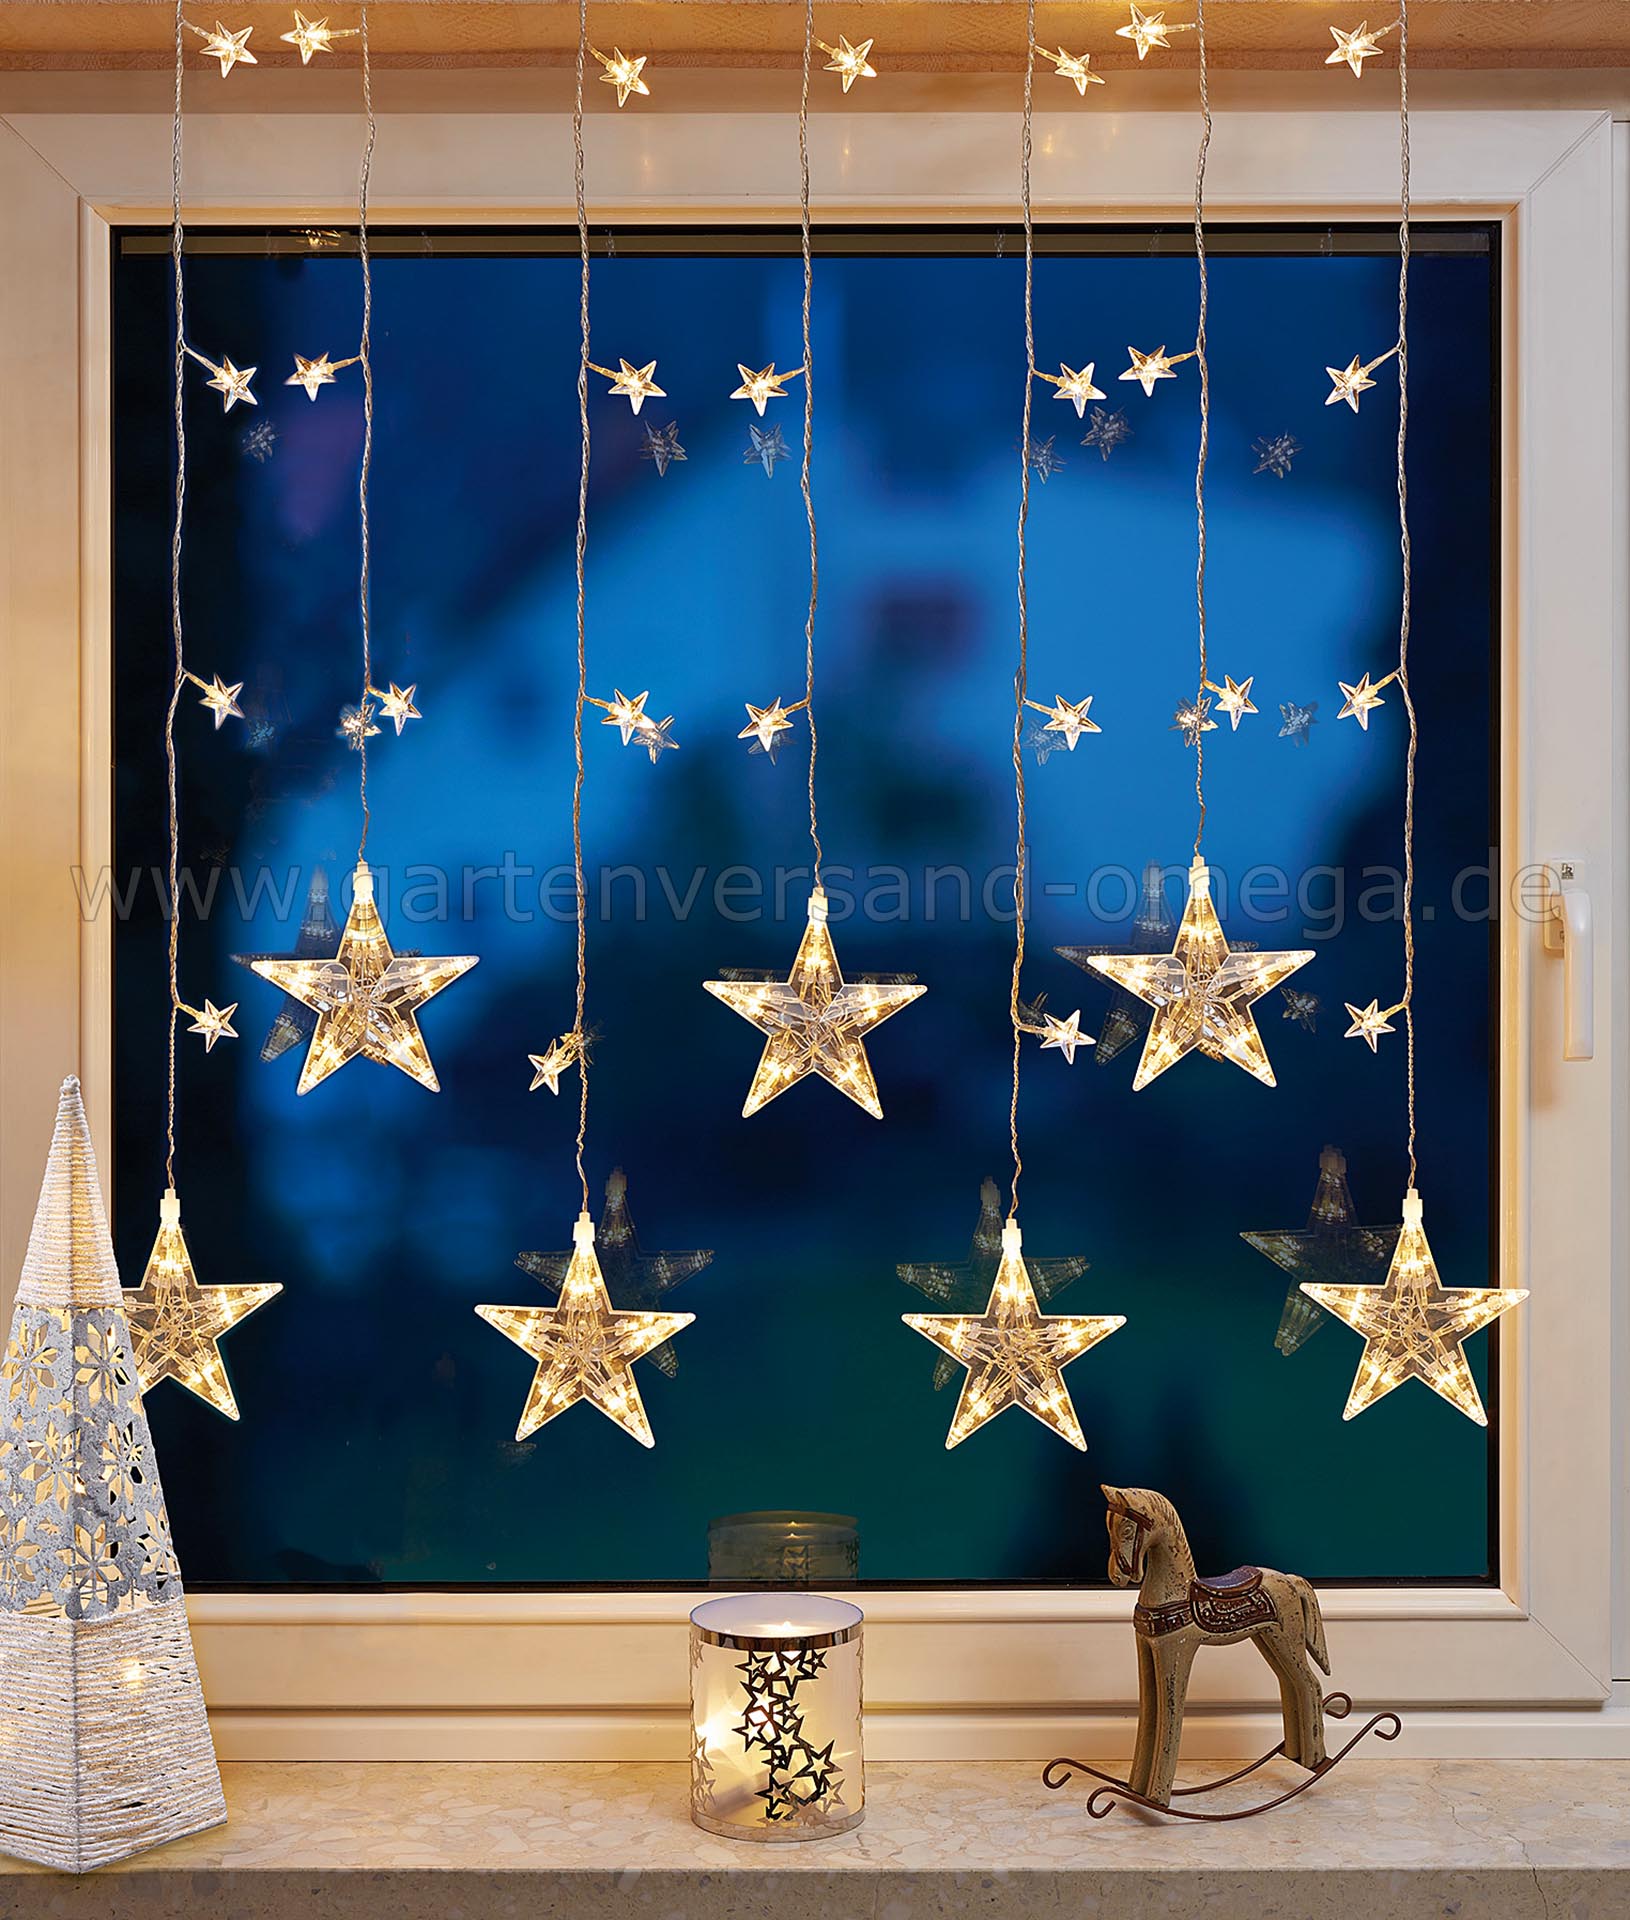 LED Schneeflocken Lichtervorhang Lichterkette Fenster Weihnachten Deko Vorhang 